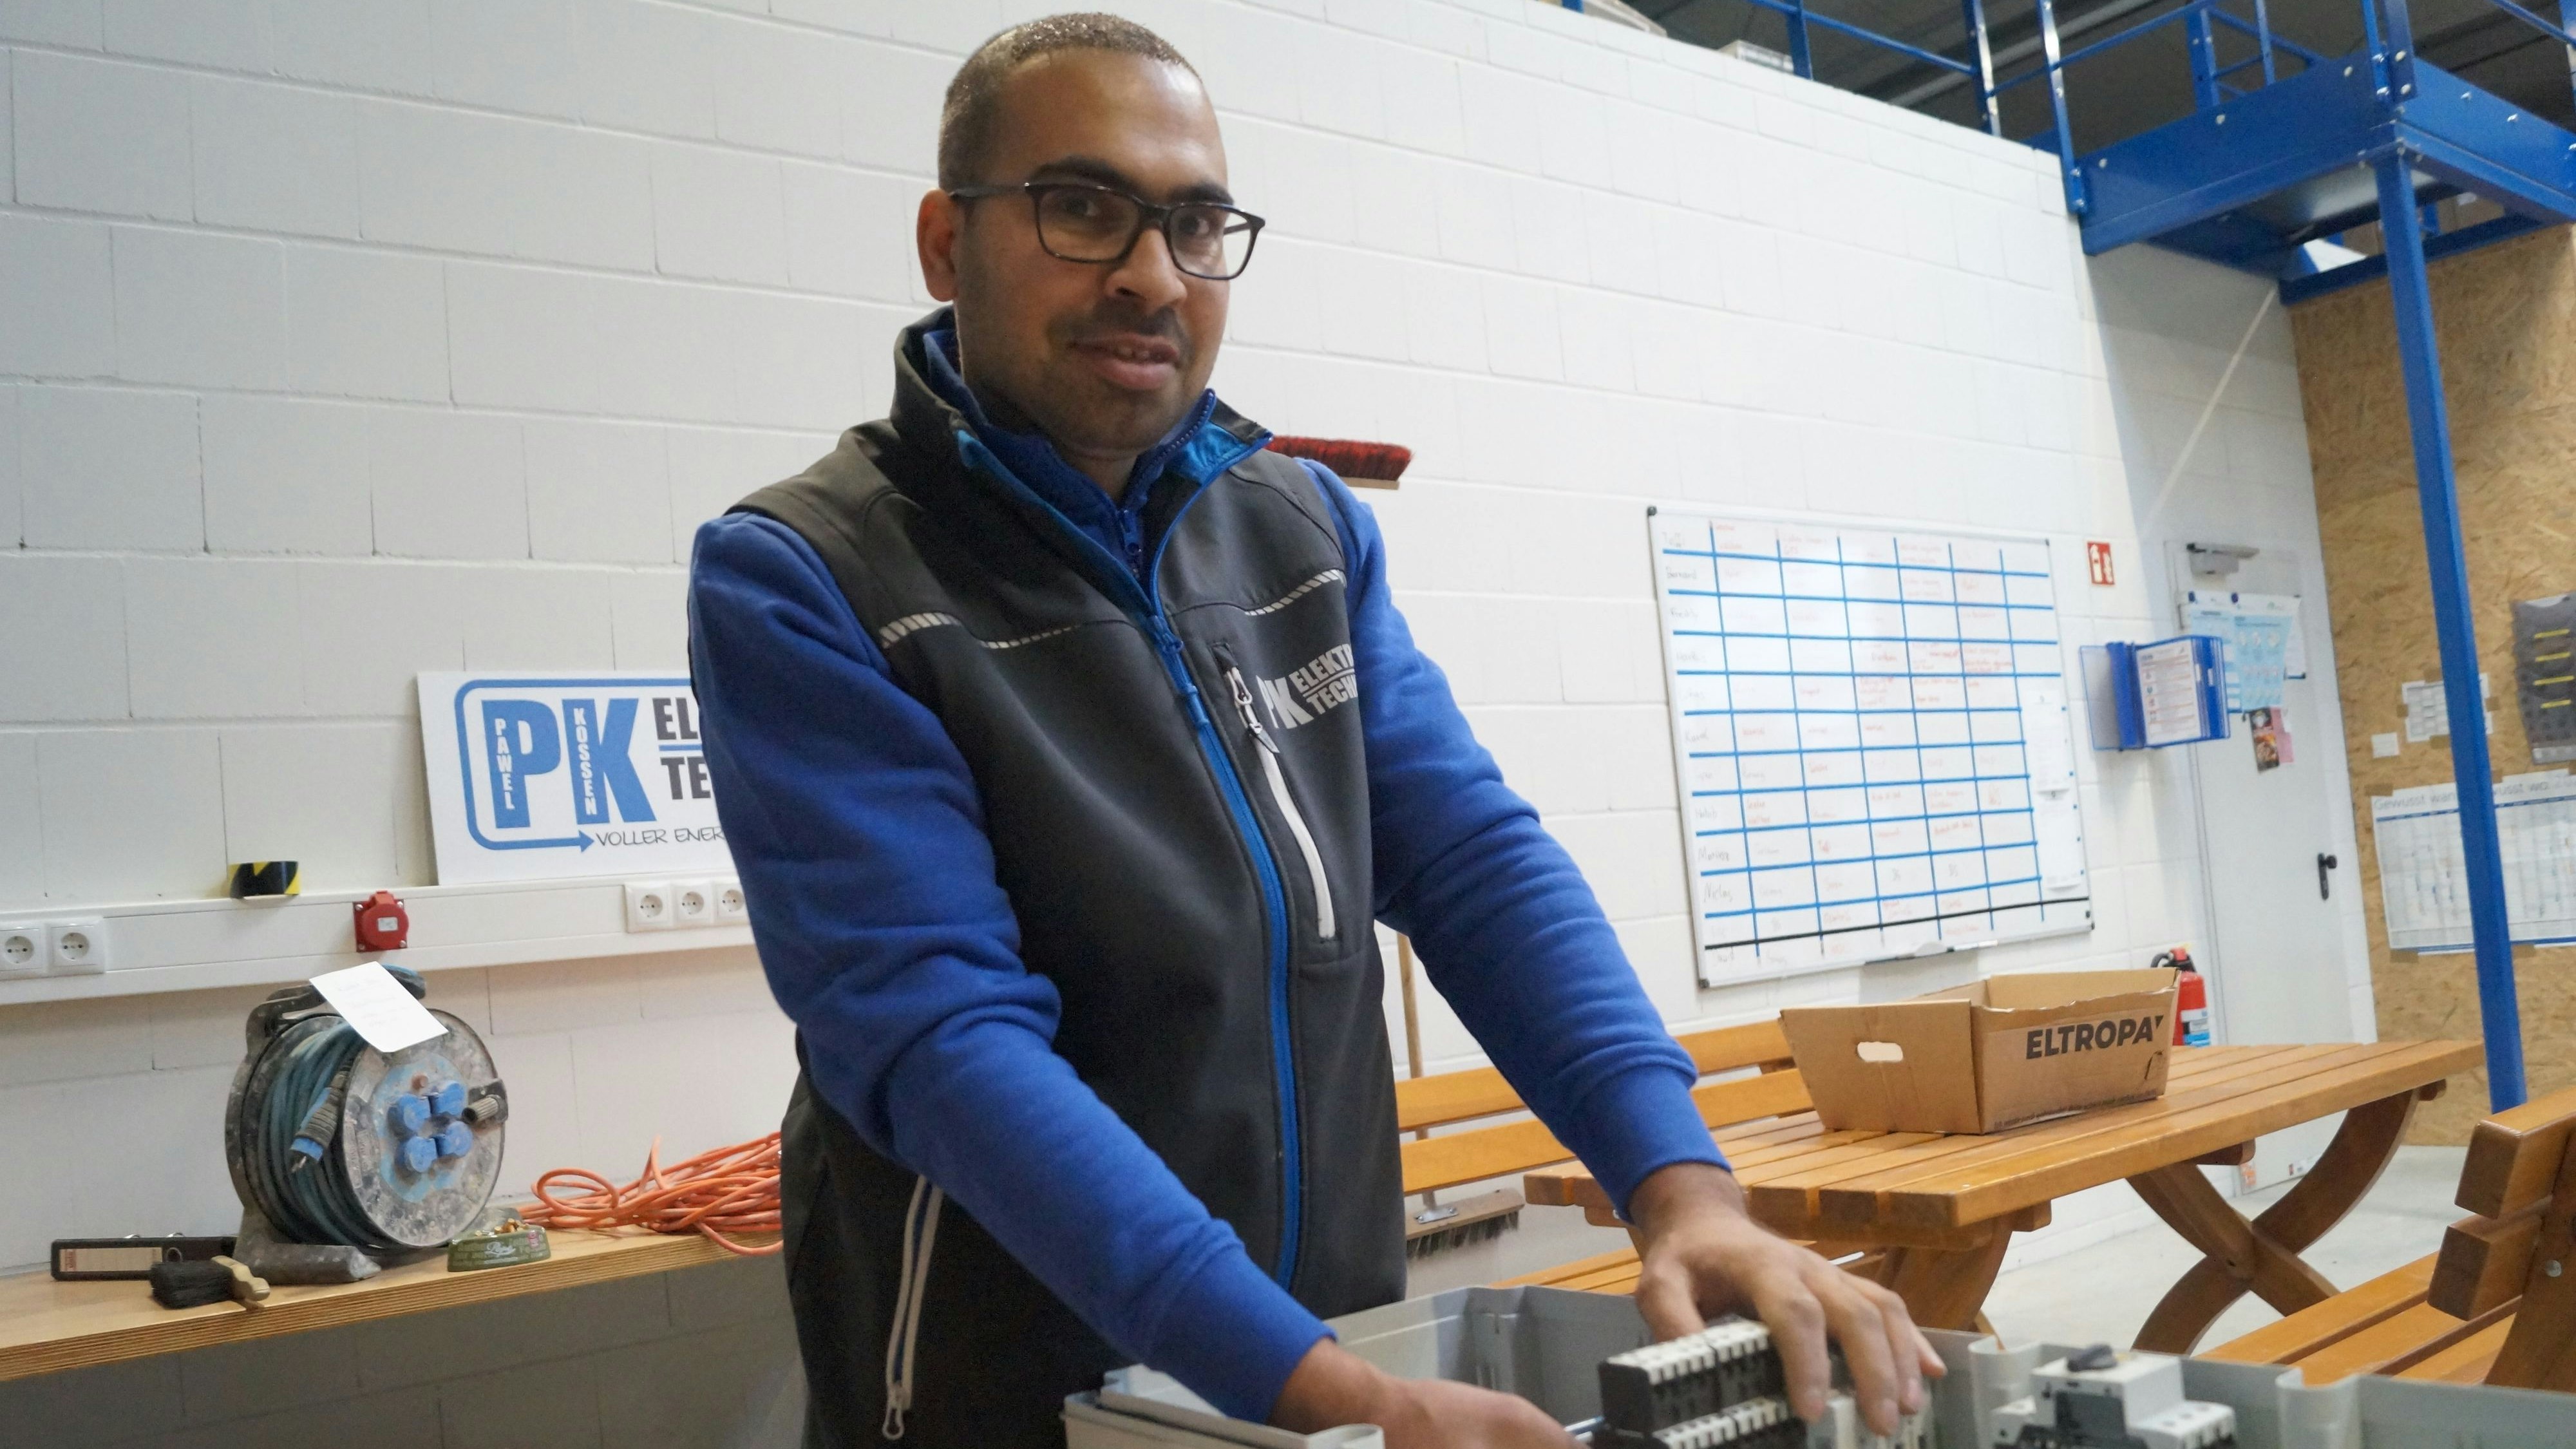 Arbeitet gerne: Habib Rahmani beendet derzeit seine Ausbildung zum Elektriker in Goldenstedt. Ein Schaltschrank stellt für ihn kein Problem mehr dar. Foto: C. Meyer